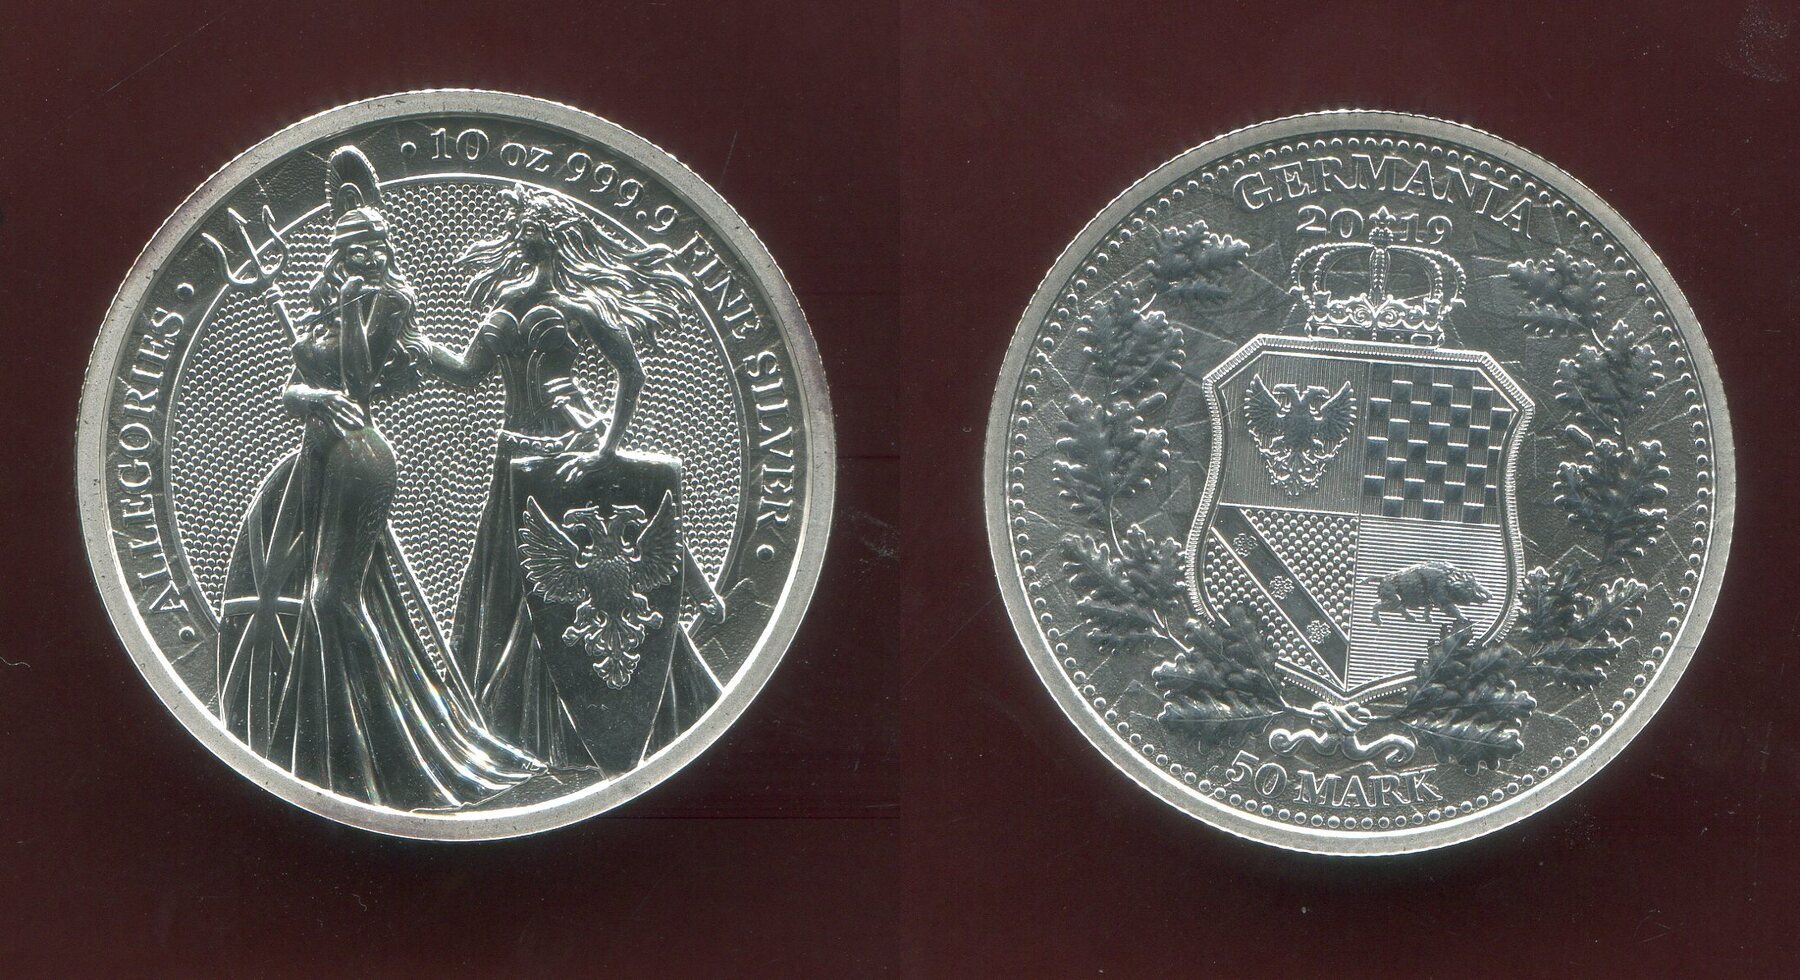 Germania Mint 50 Mark Silber 2020 Allegories Germania mit Britannia 10